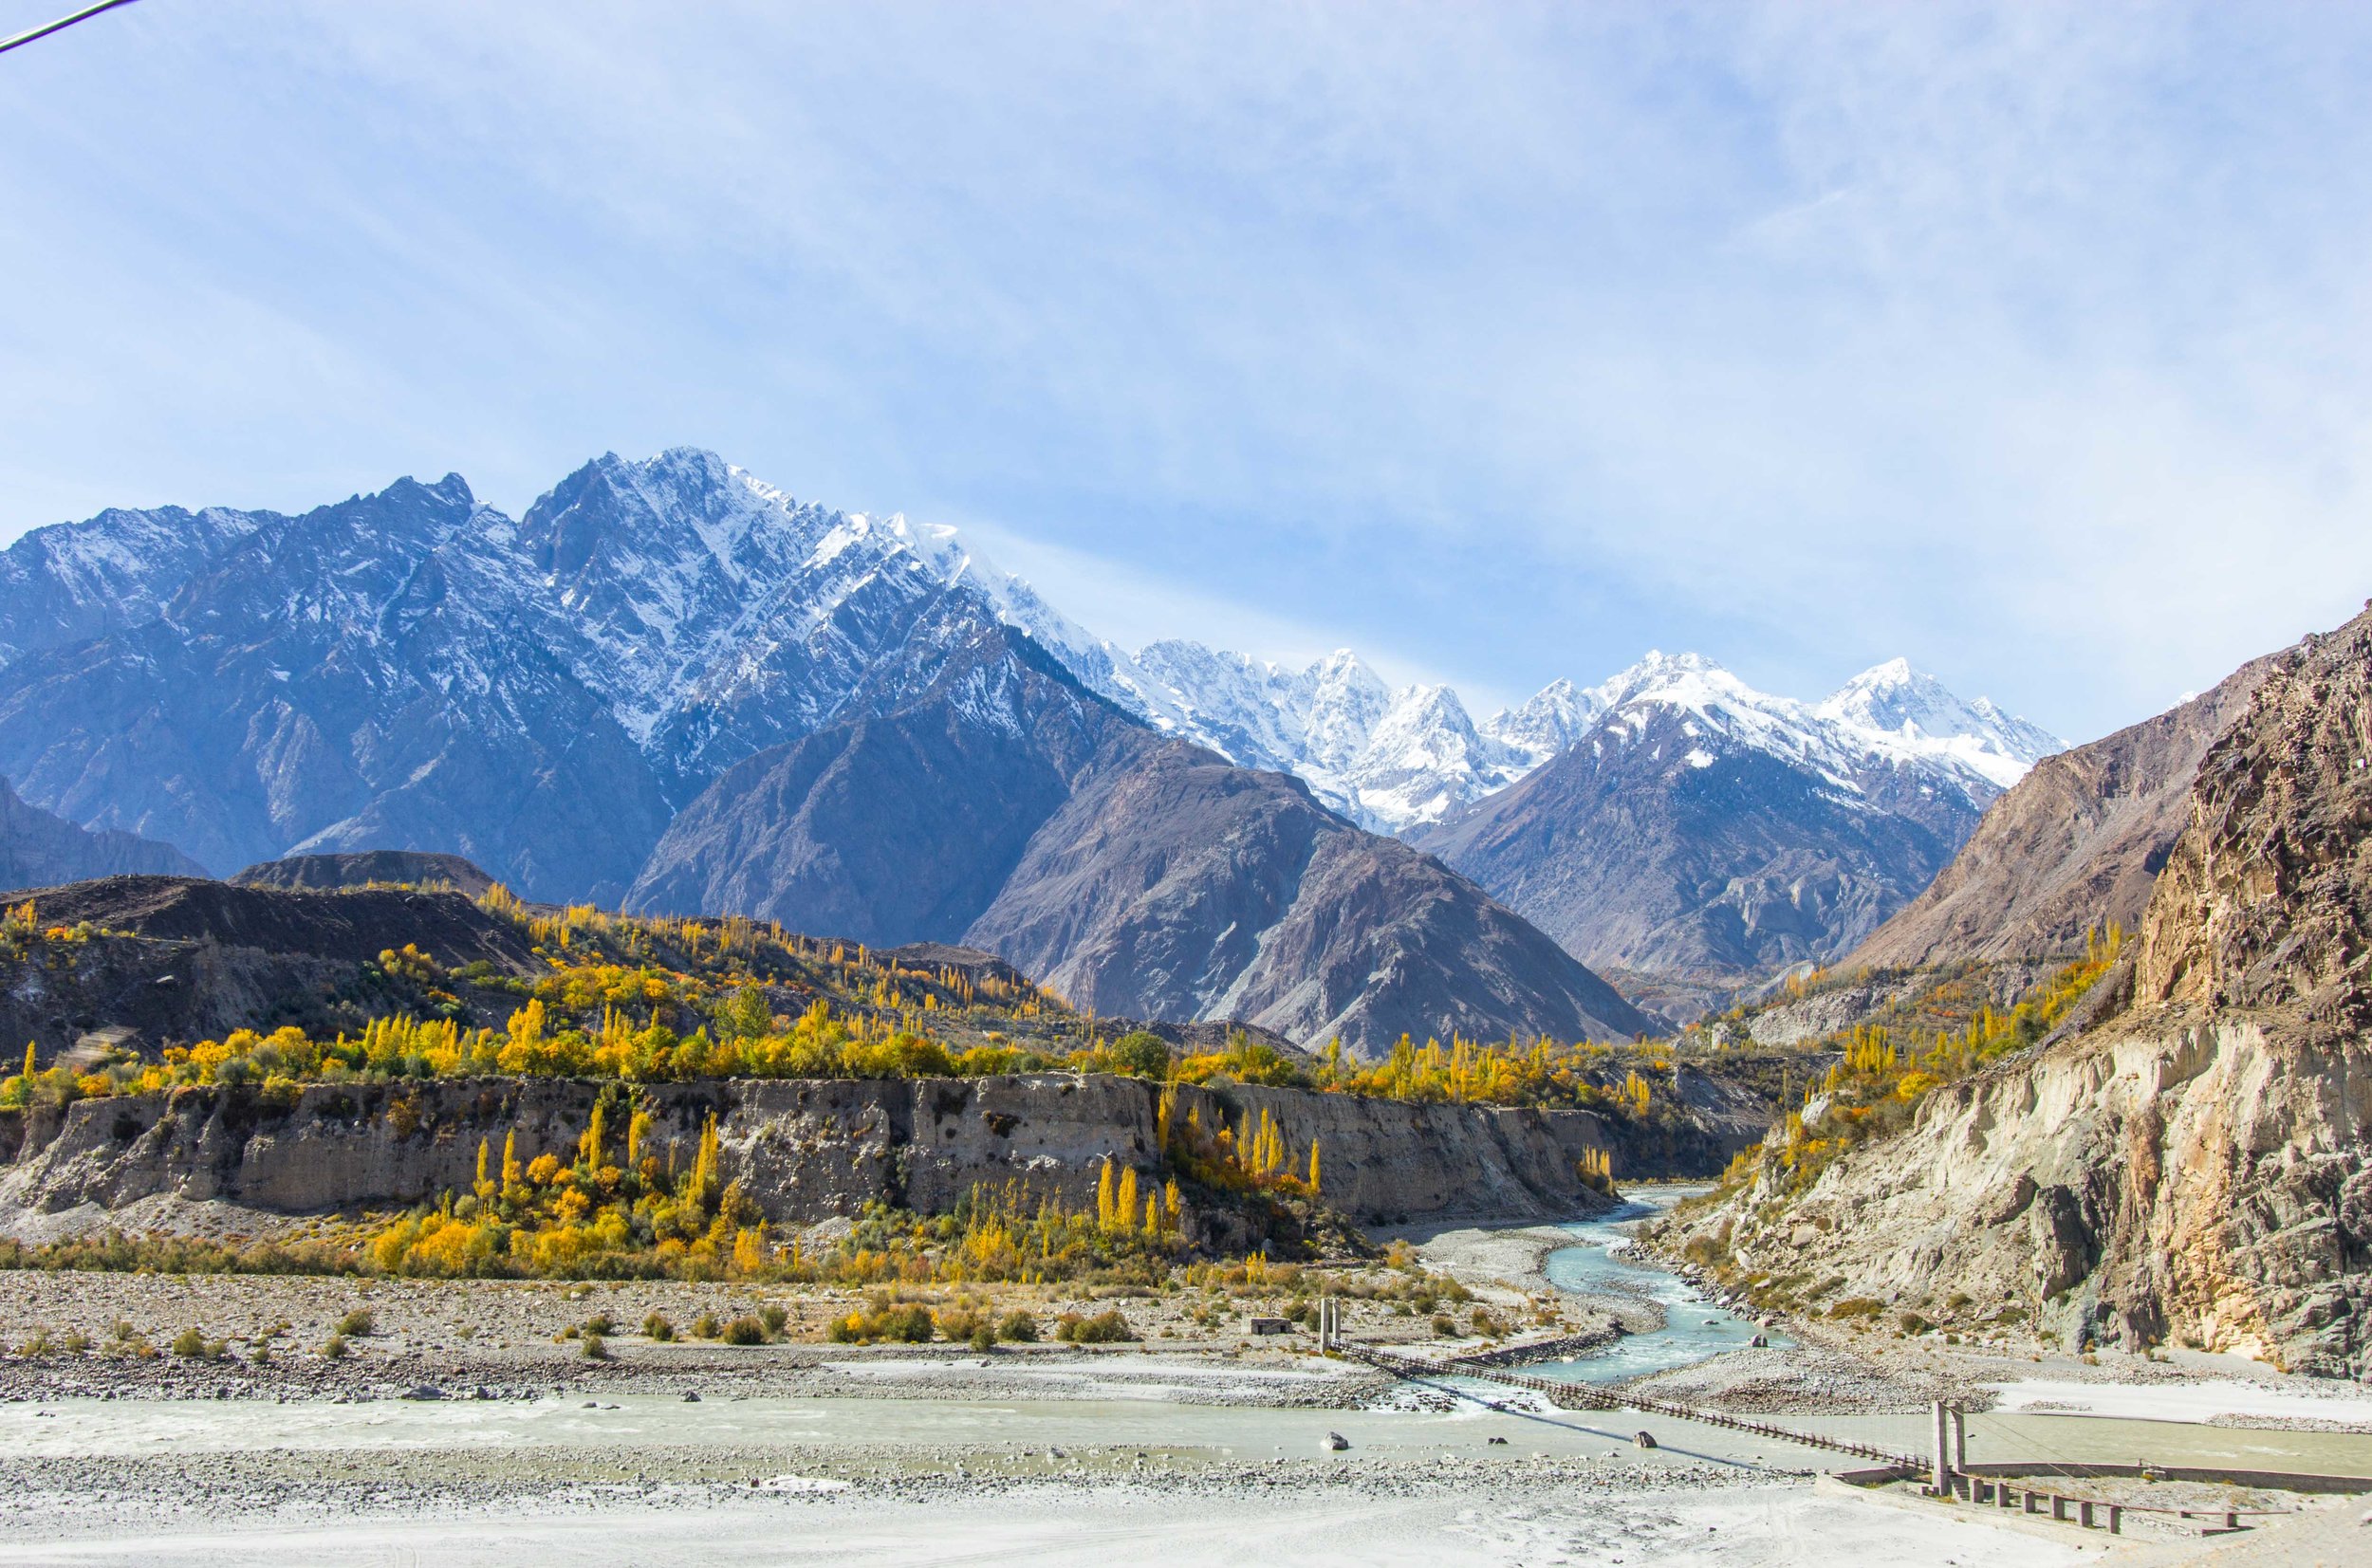  Thung lũng Hunza mùa thu đẹp ngất ngây với núi tuyết và lá vàng 